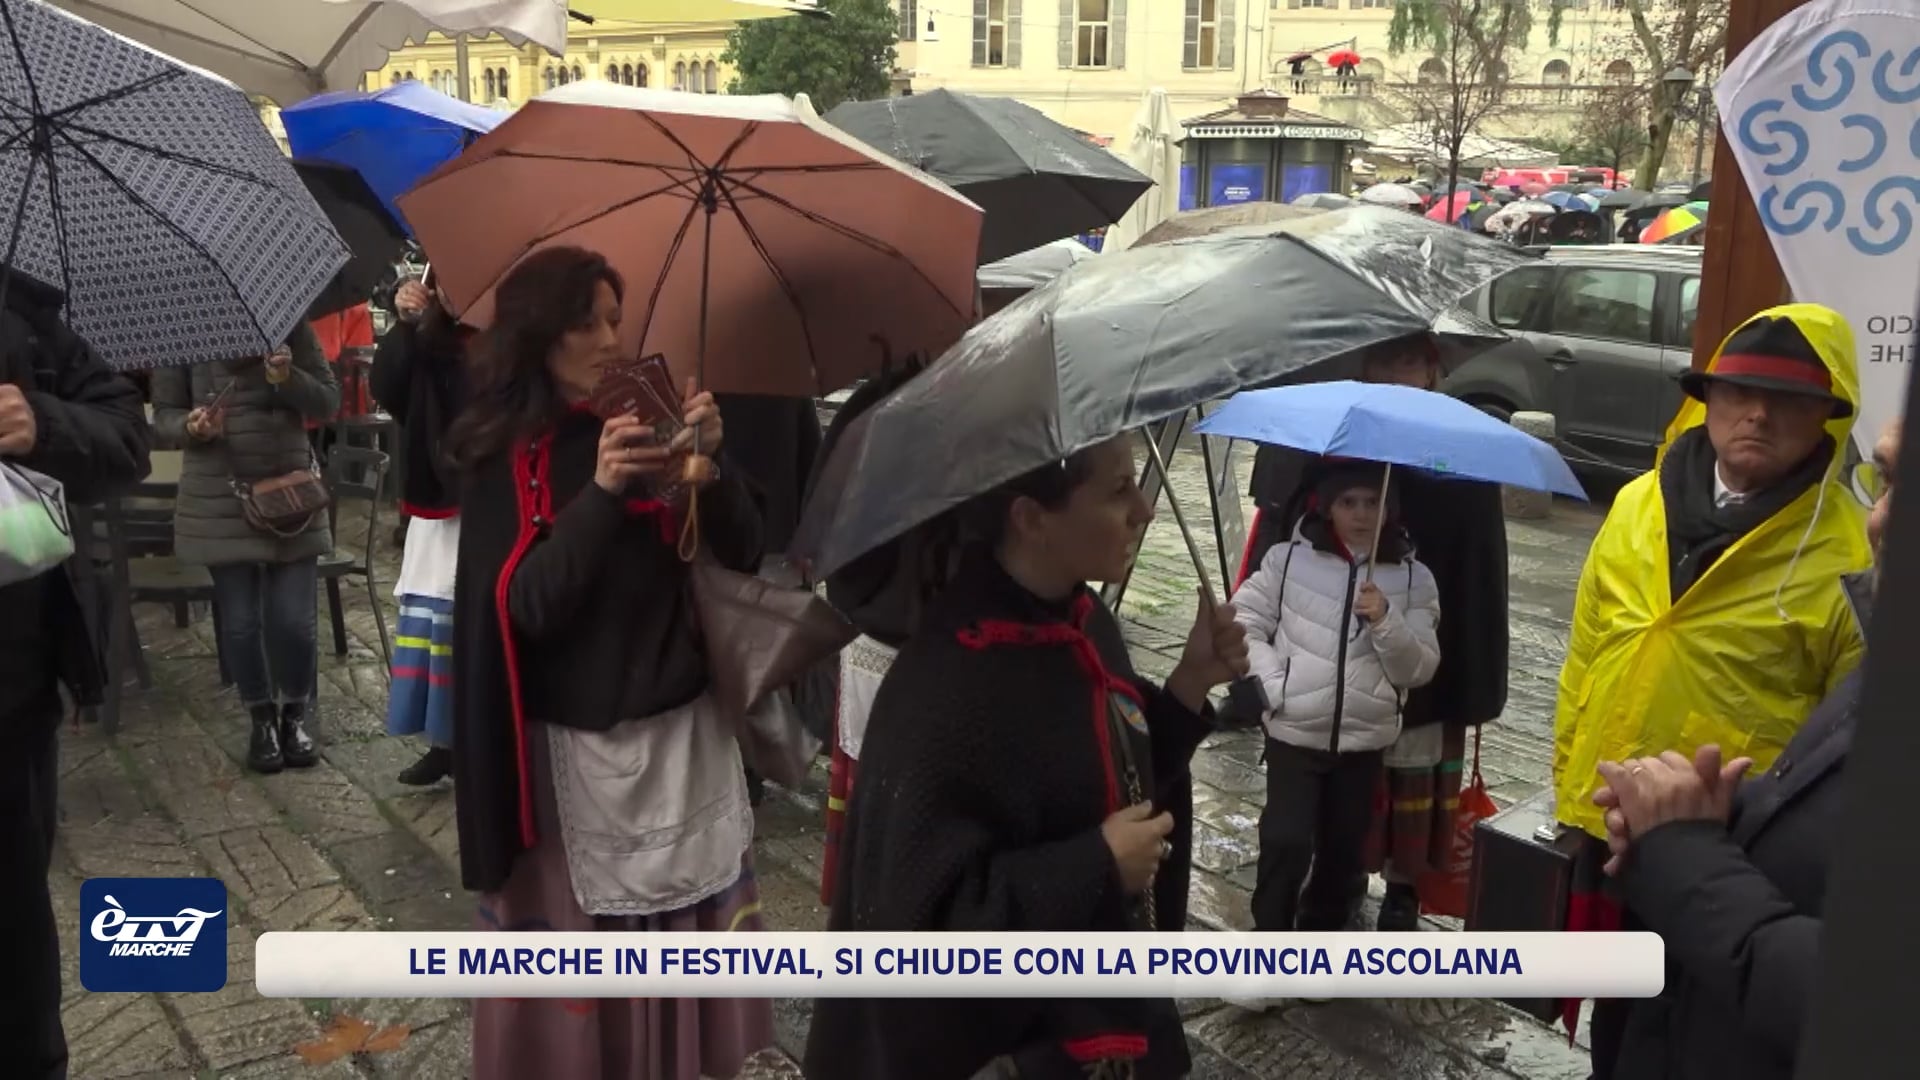 Le Marche in Festival, si chiude con la provincia ascolana - VIDEO